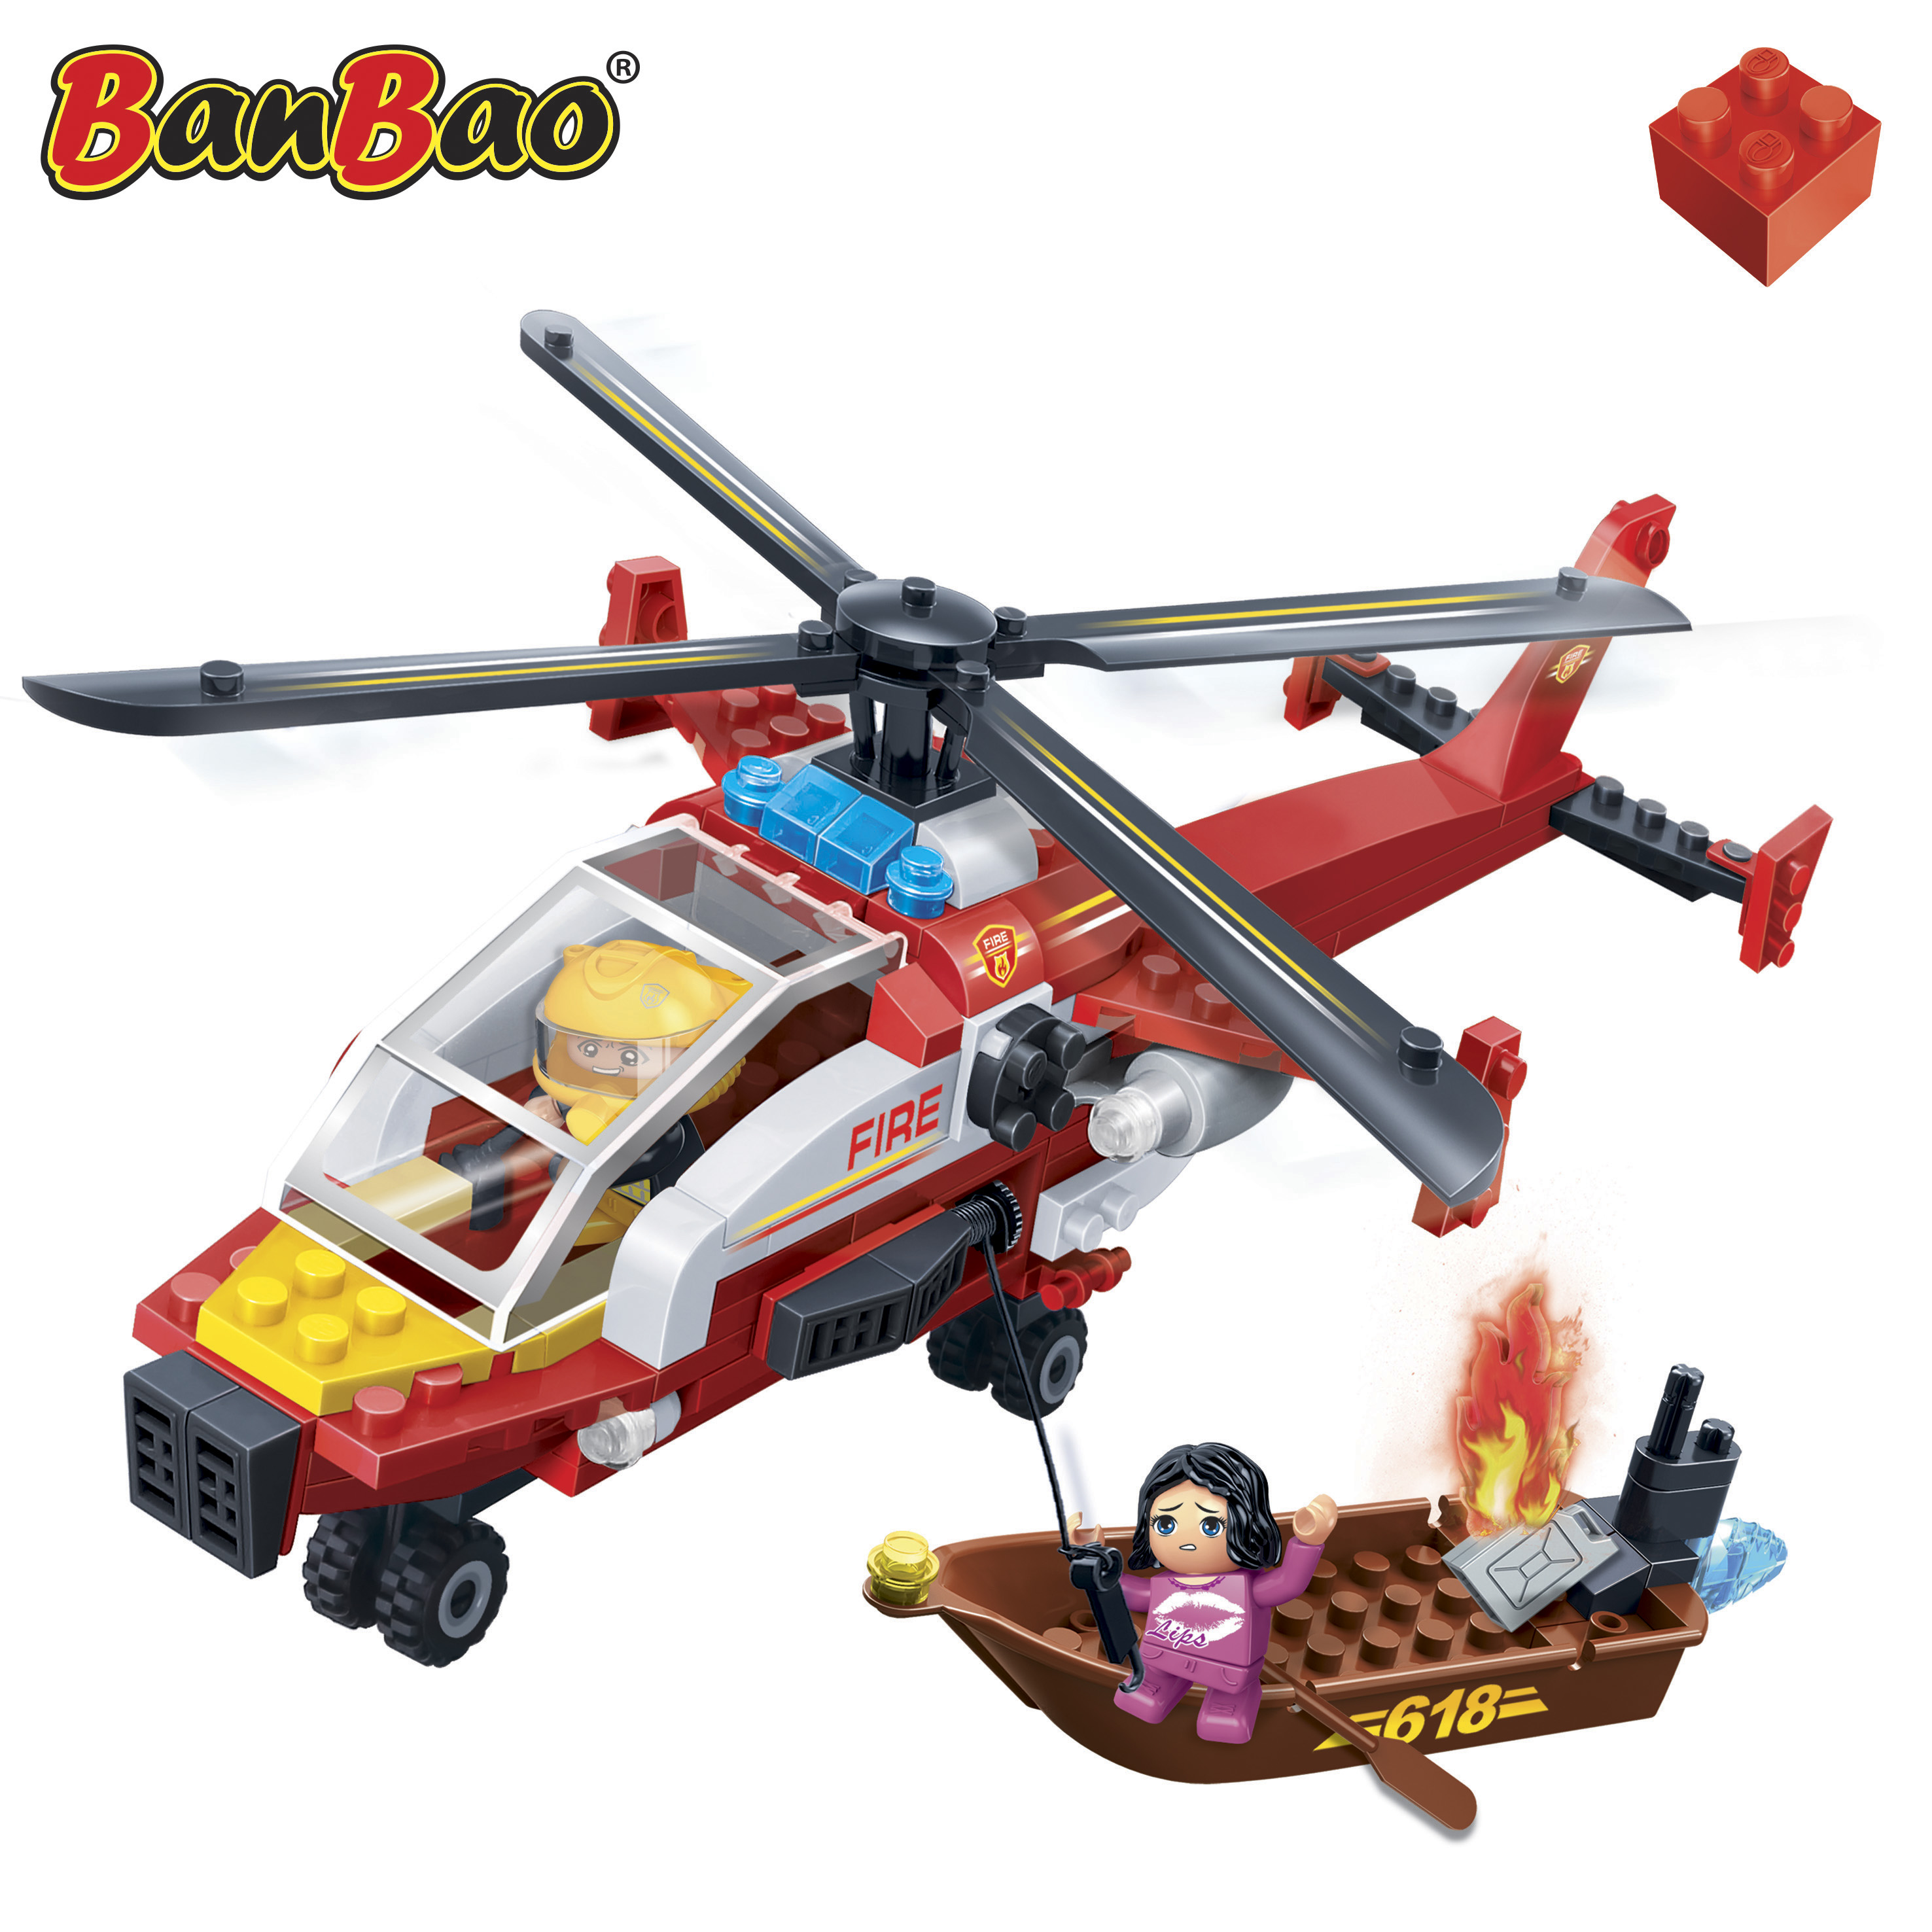 Kinder Geschenk Konstruktion Spielzeug Bausteine Baukästen Feuerwehr Hubschrauber 7107